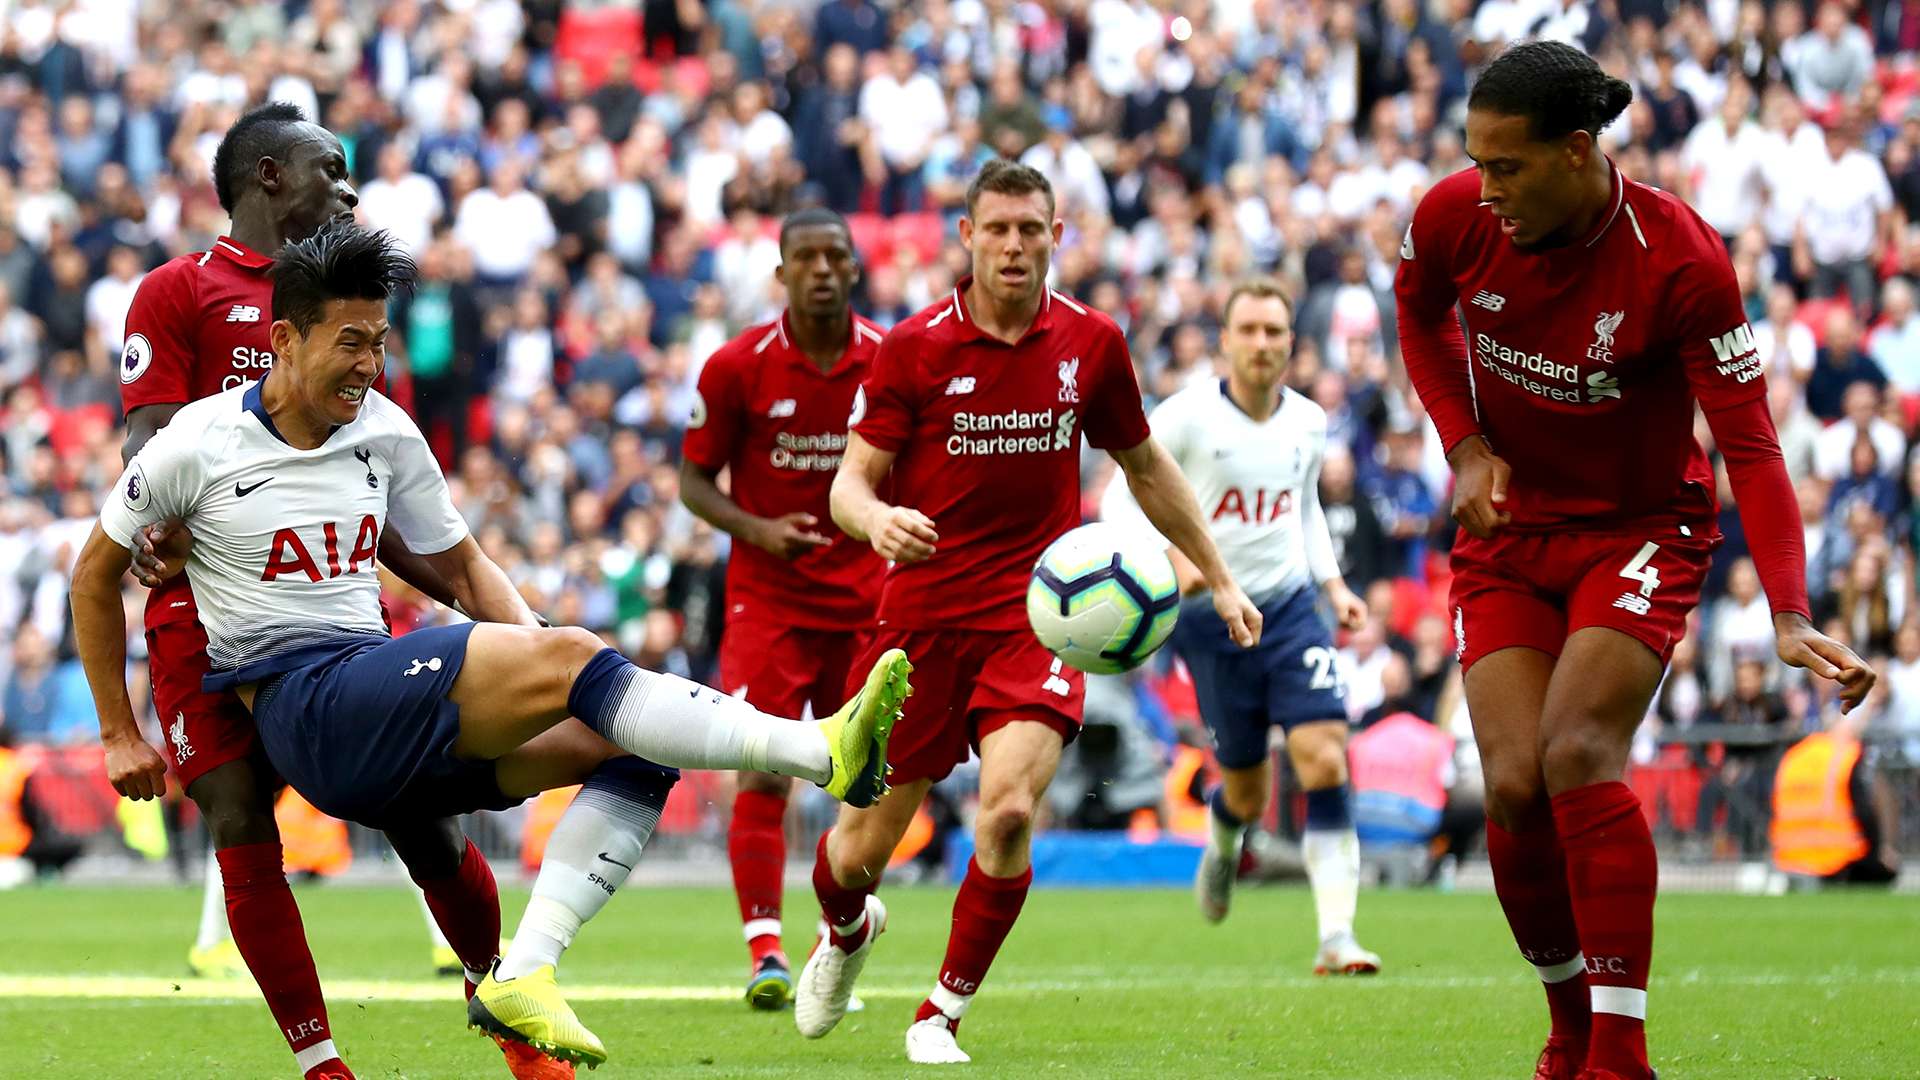 Tottenham Liverpool Premier League 2018-19